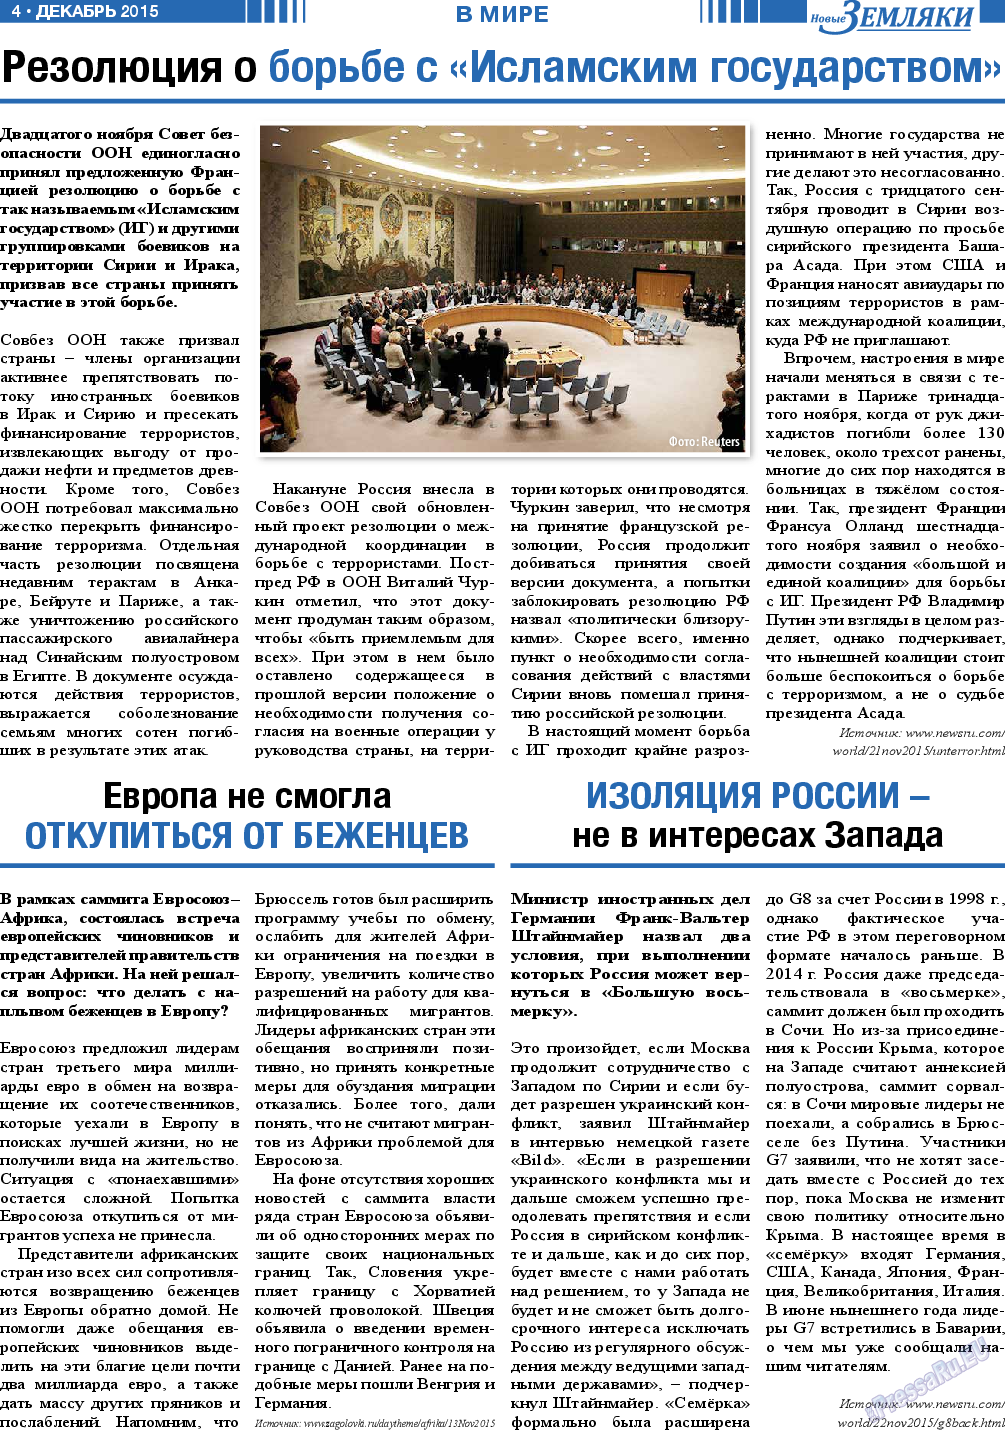 Новые Земляки (газета). 2015 год, номер 12, стр. 4